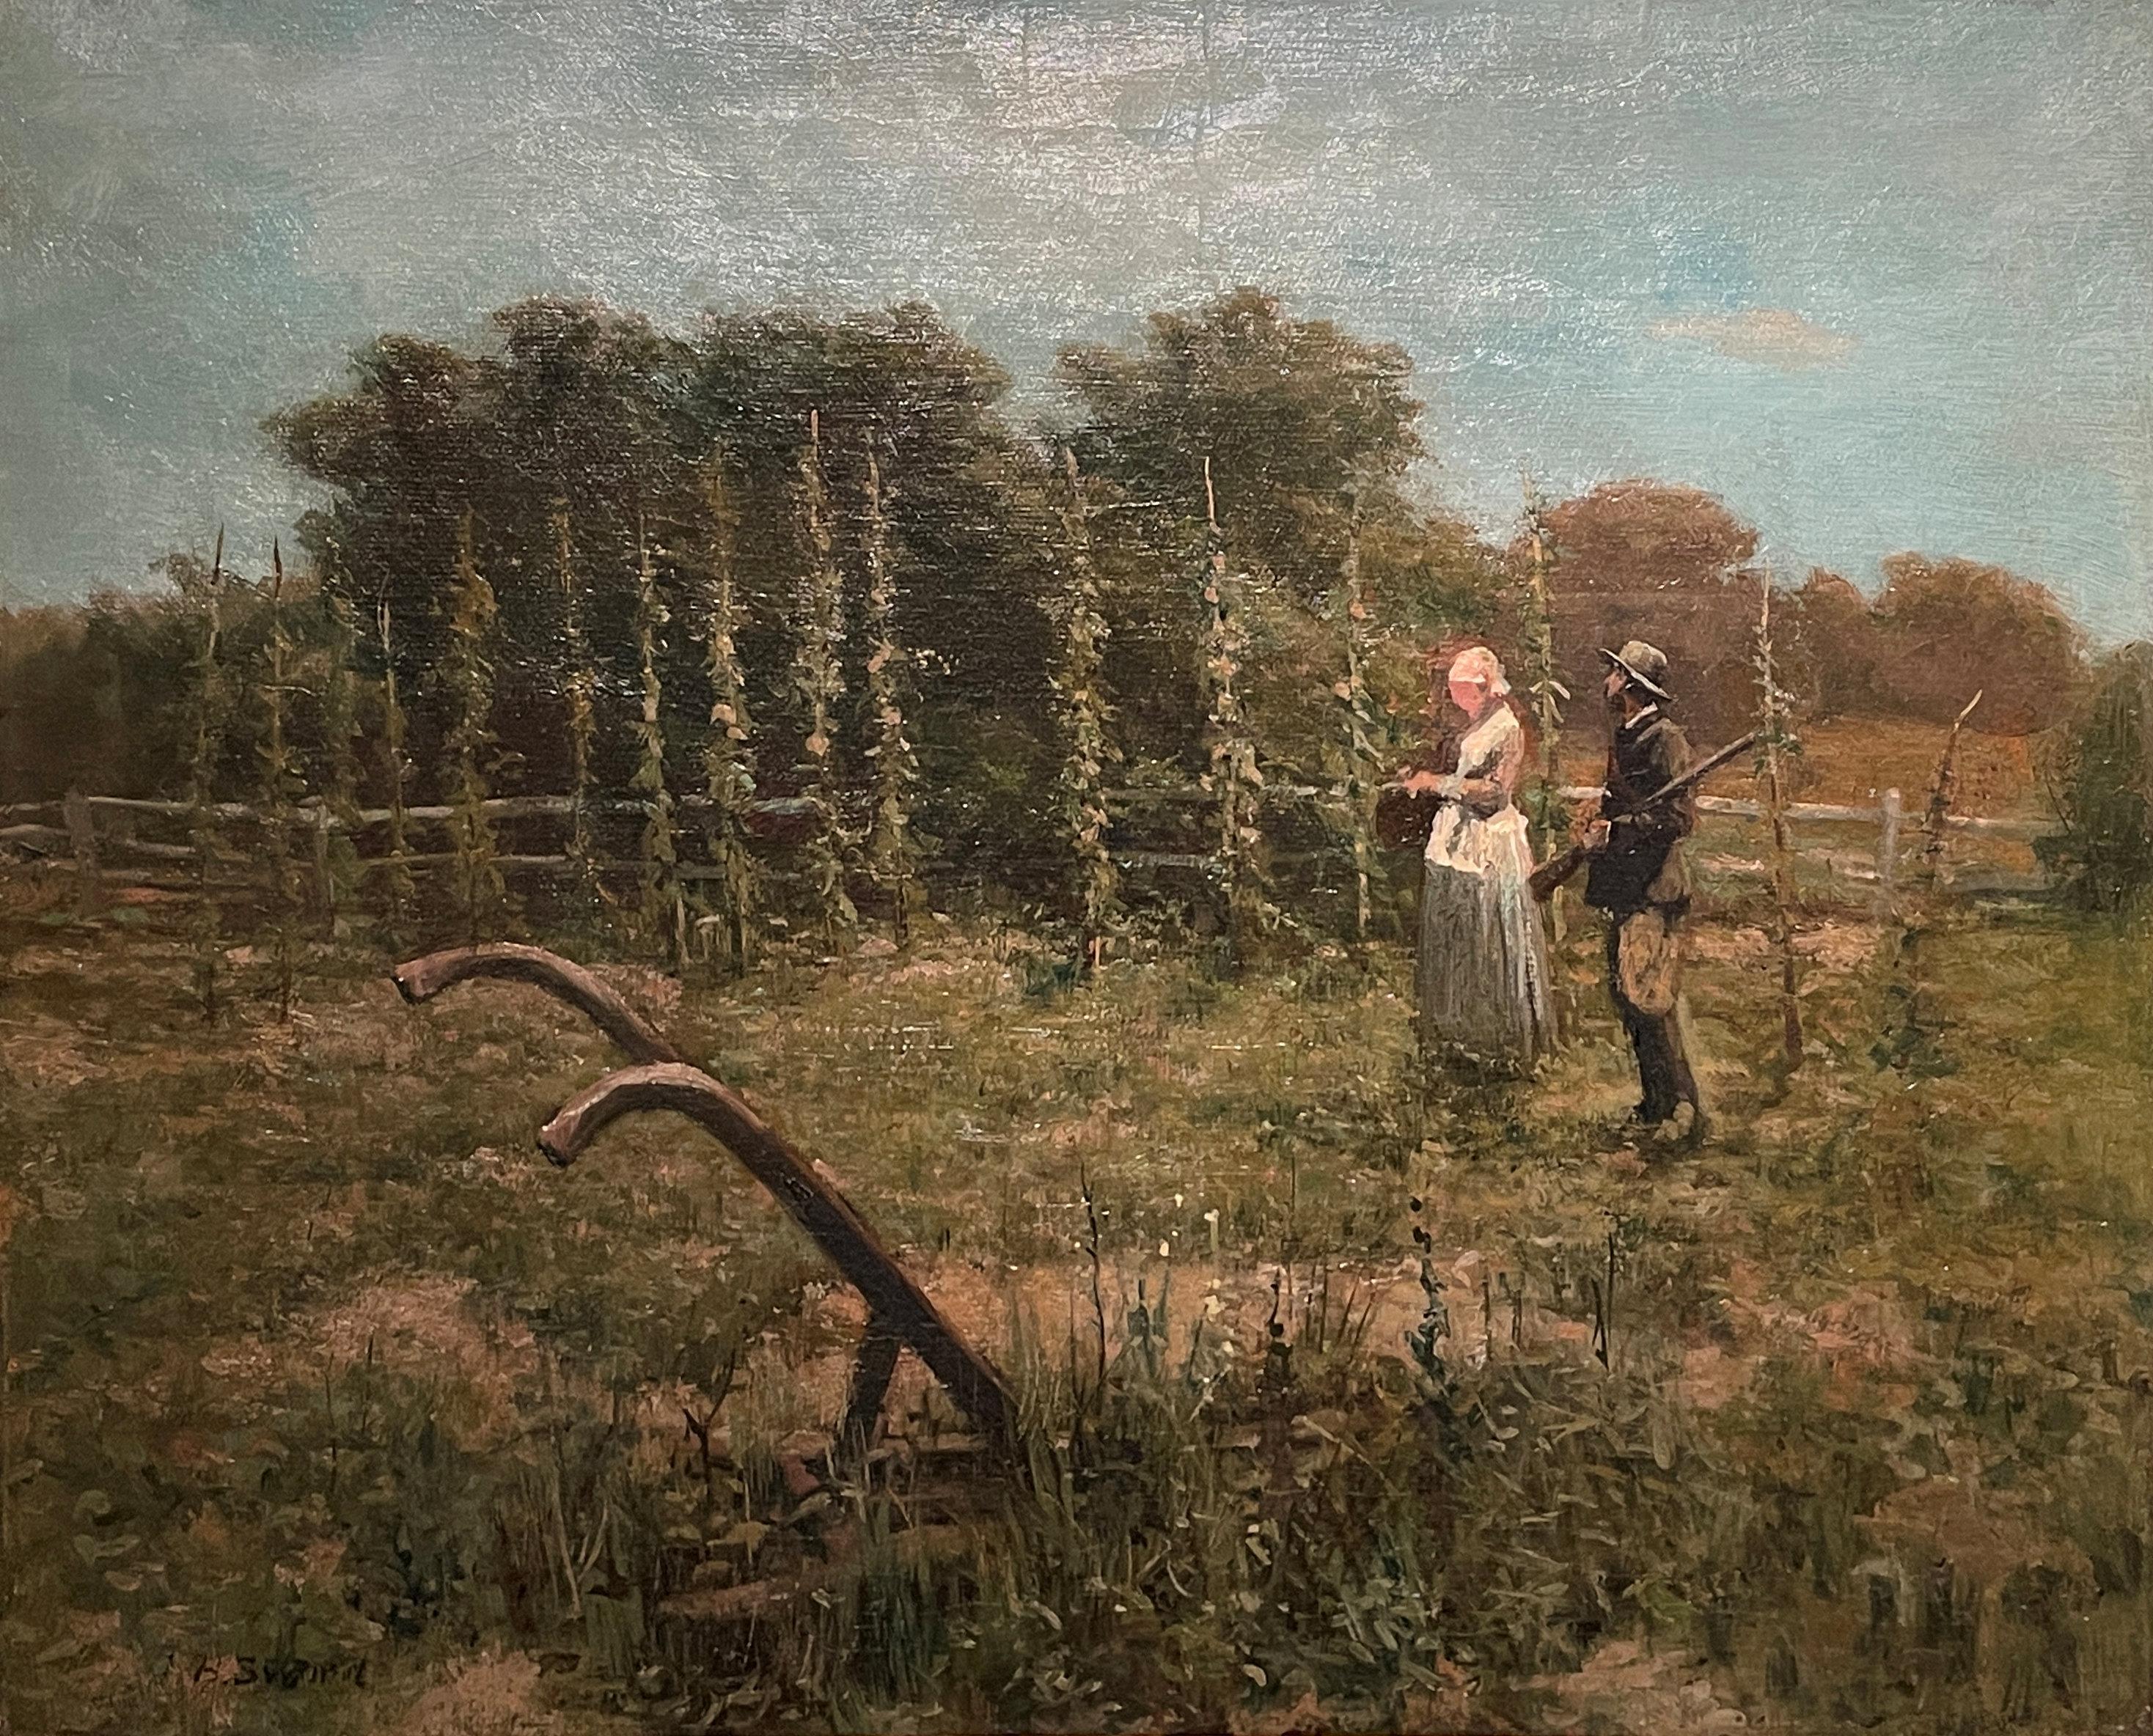 Landscape Painting James Brade Sword - « Couple in the Field », épée de James Brade, chasseur sur paysage de ferme